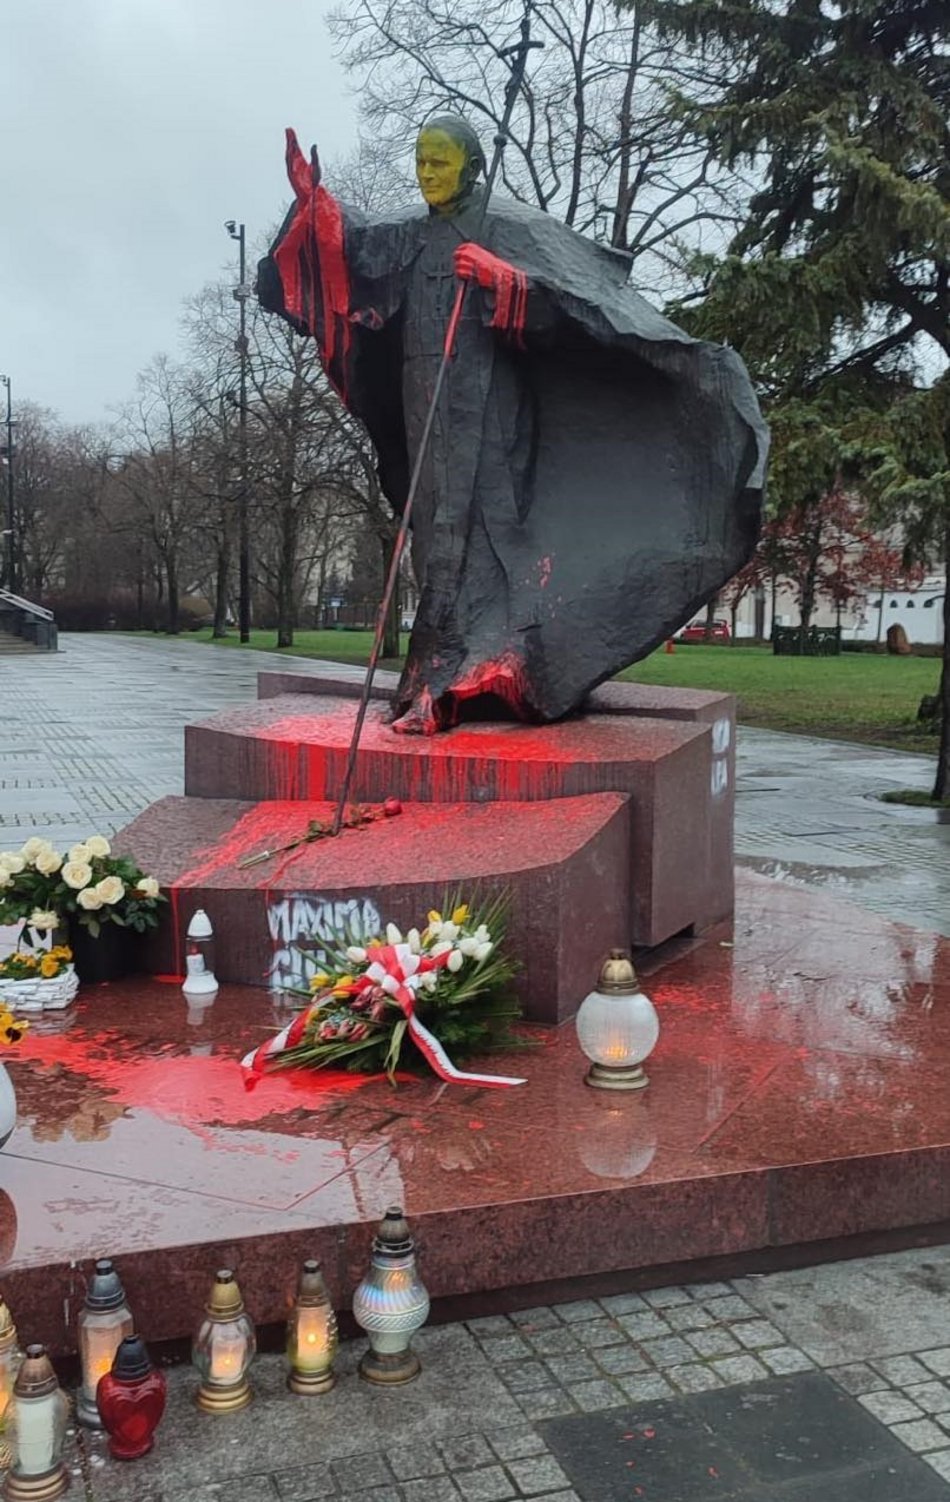 Pomnik papieża Jana Pawła II przed katedrą zalany czerwoną farbą